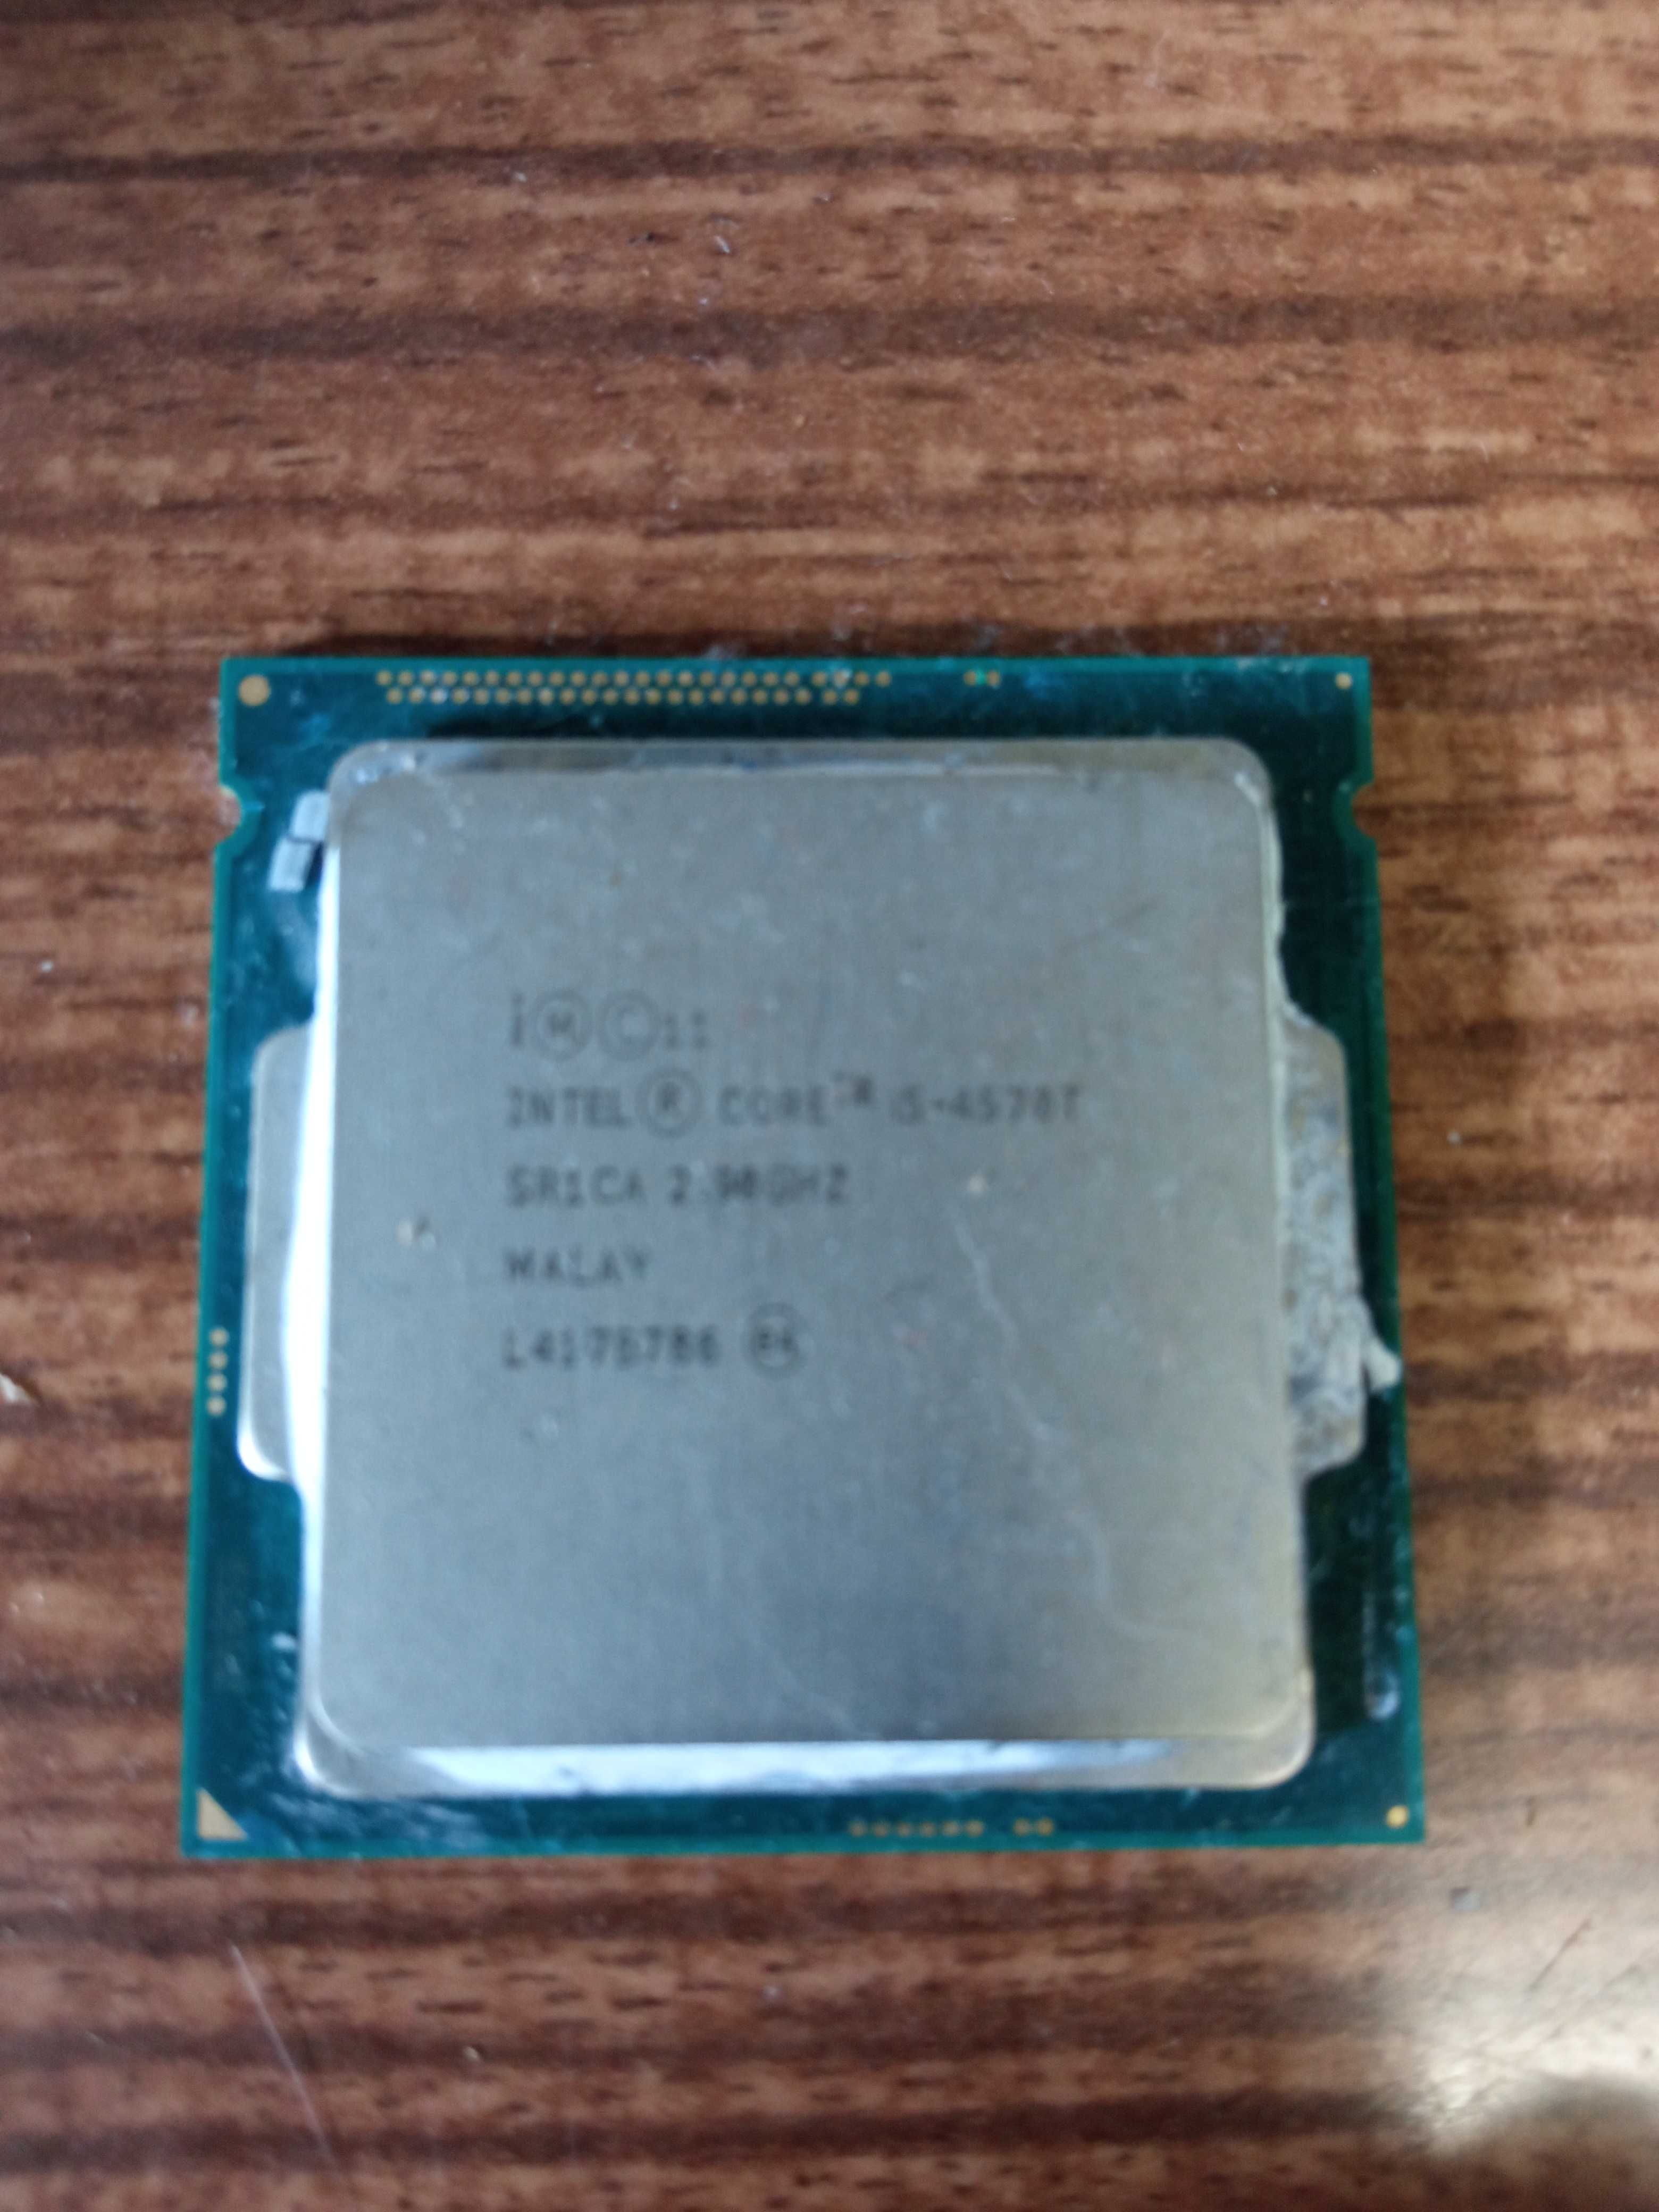 dois processadores intel, um i7 e um i5, i7 3.4ghz , i5 2.9ghz.